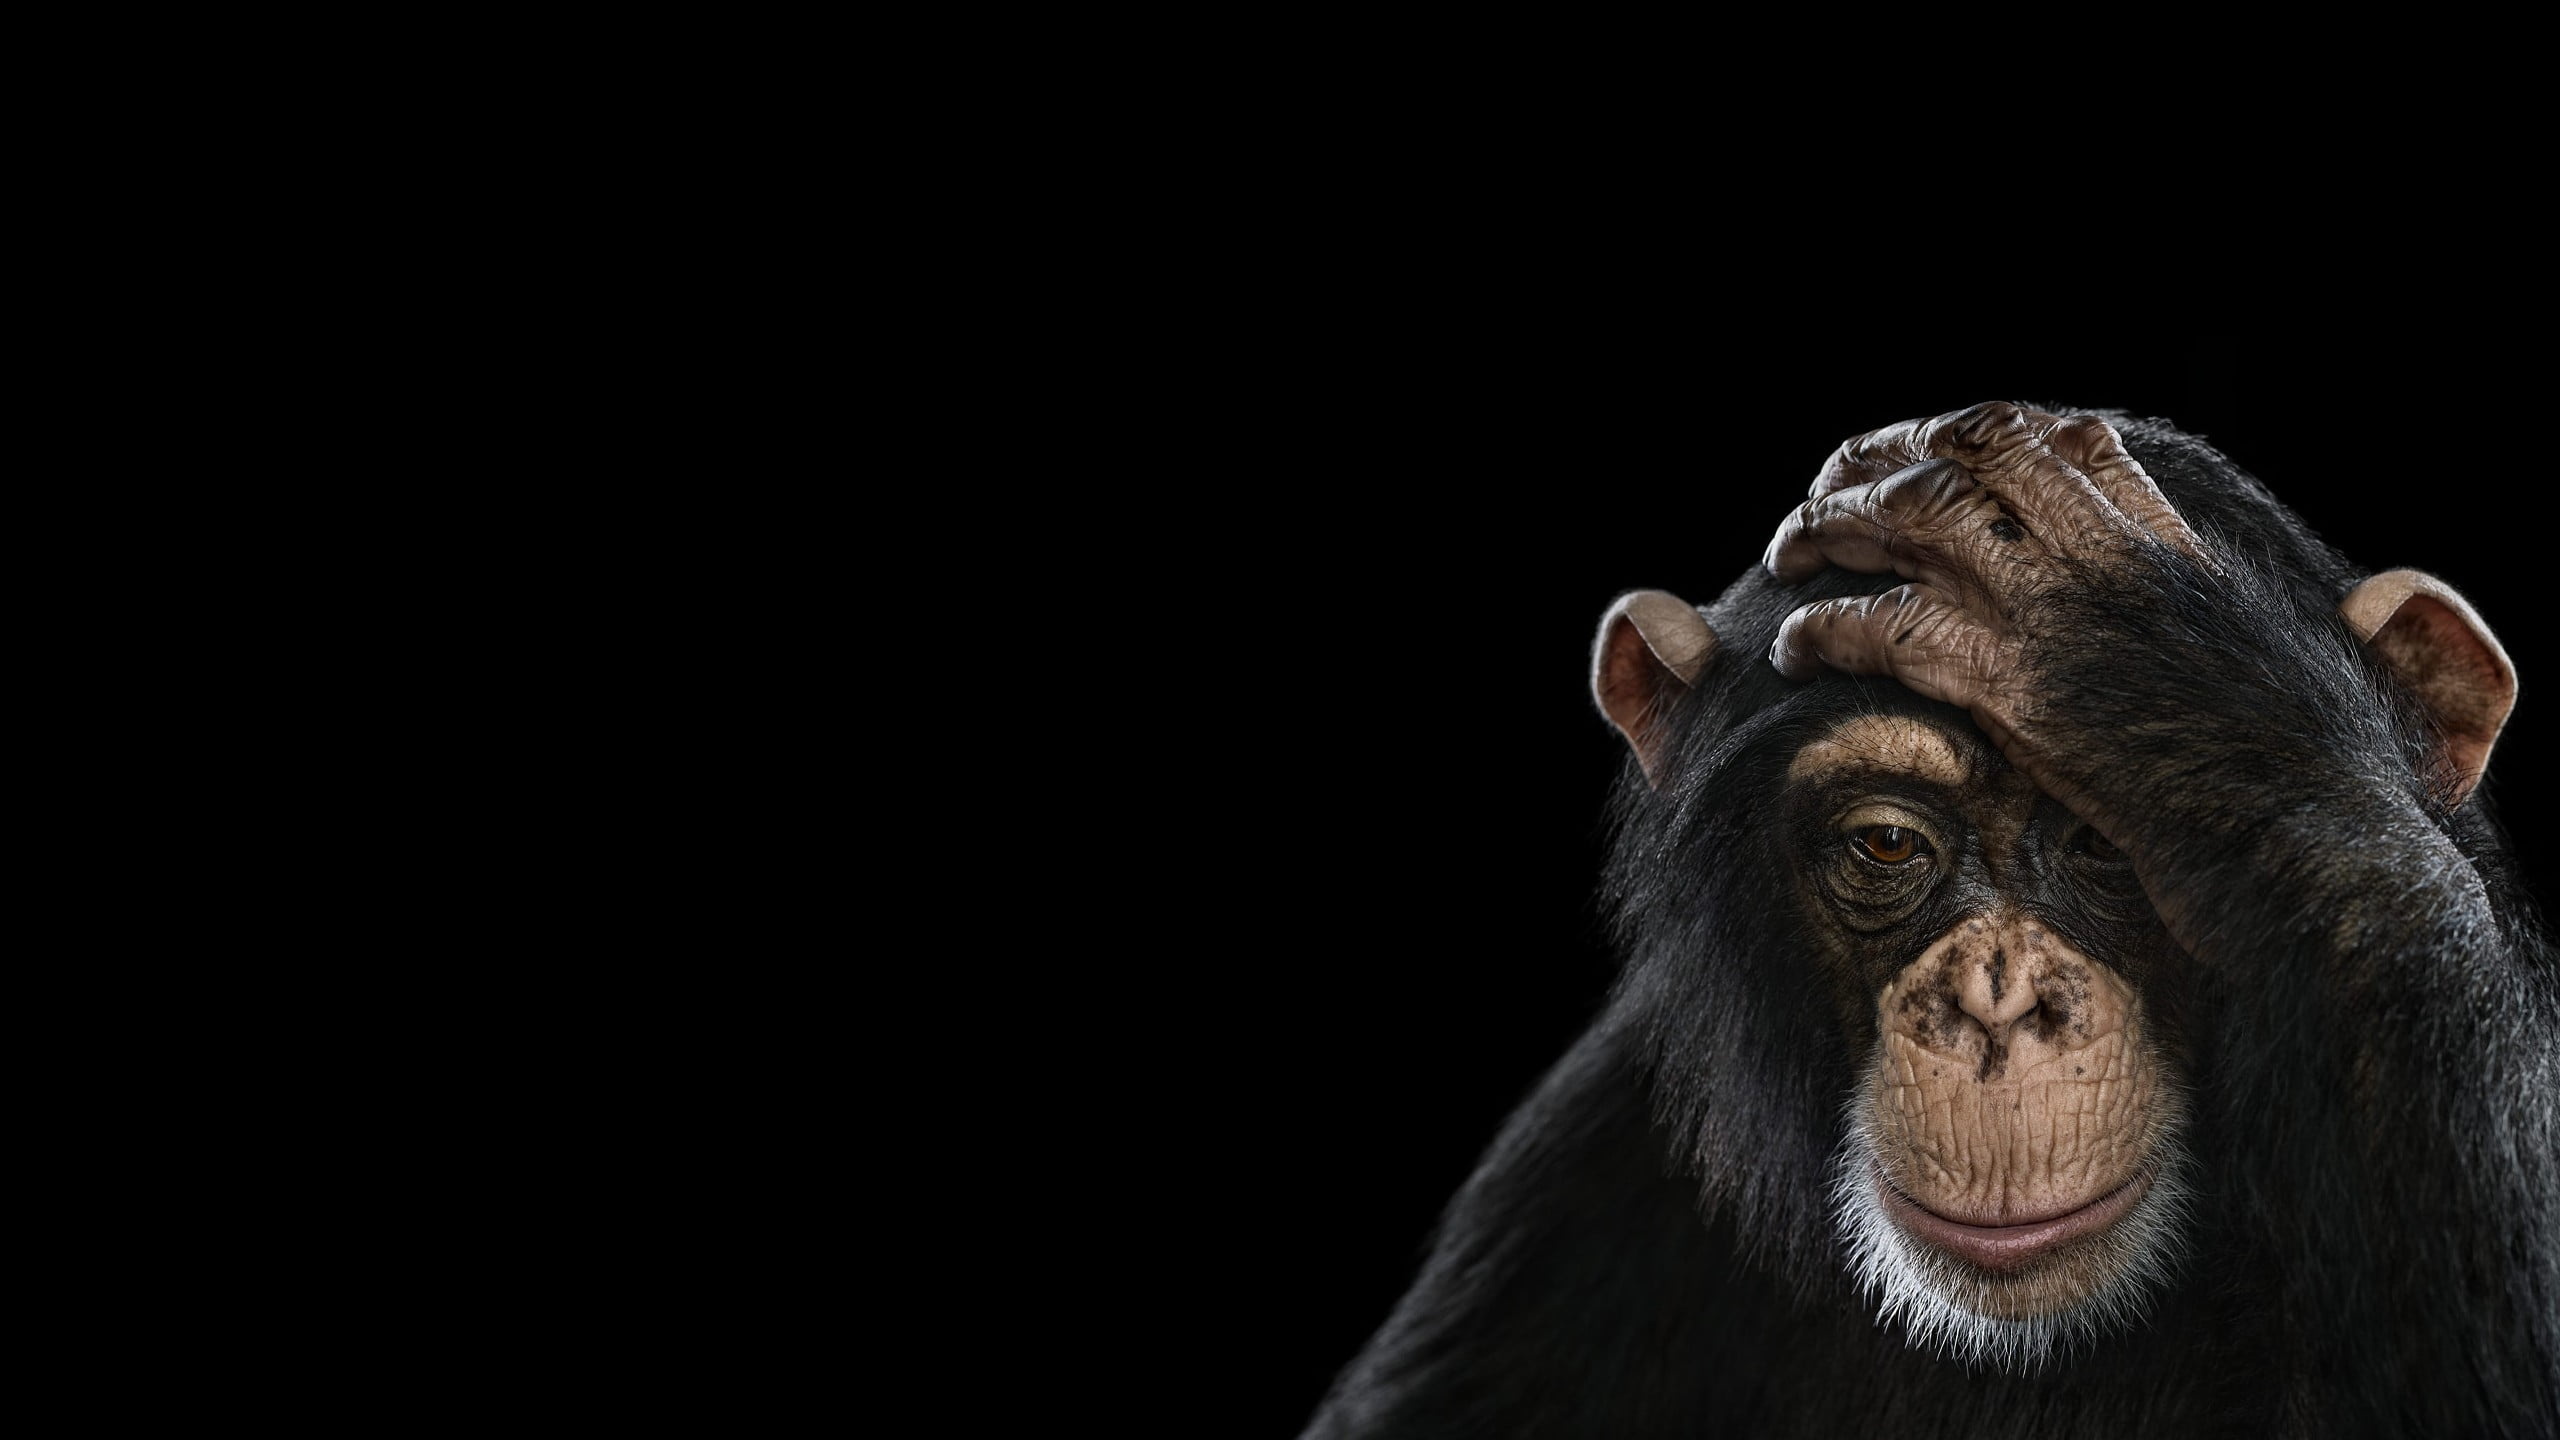 Dark monkey wallpaper, Mysterious monkey, Primate mystery, Shadowy creature, 2560x1440 HD Desktop